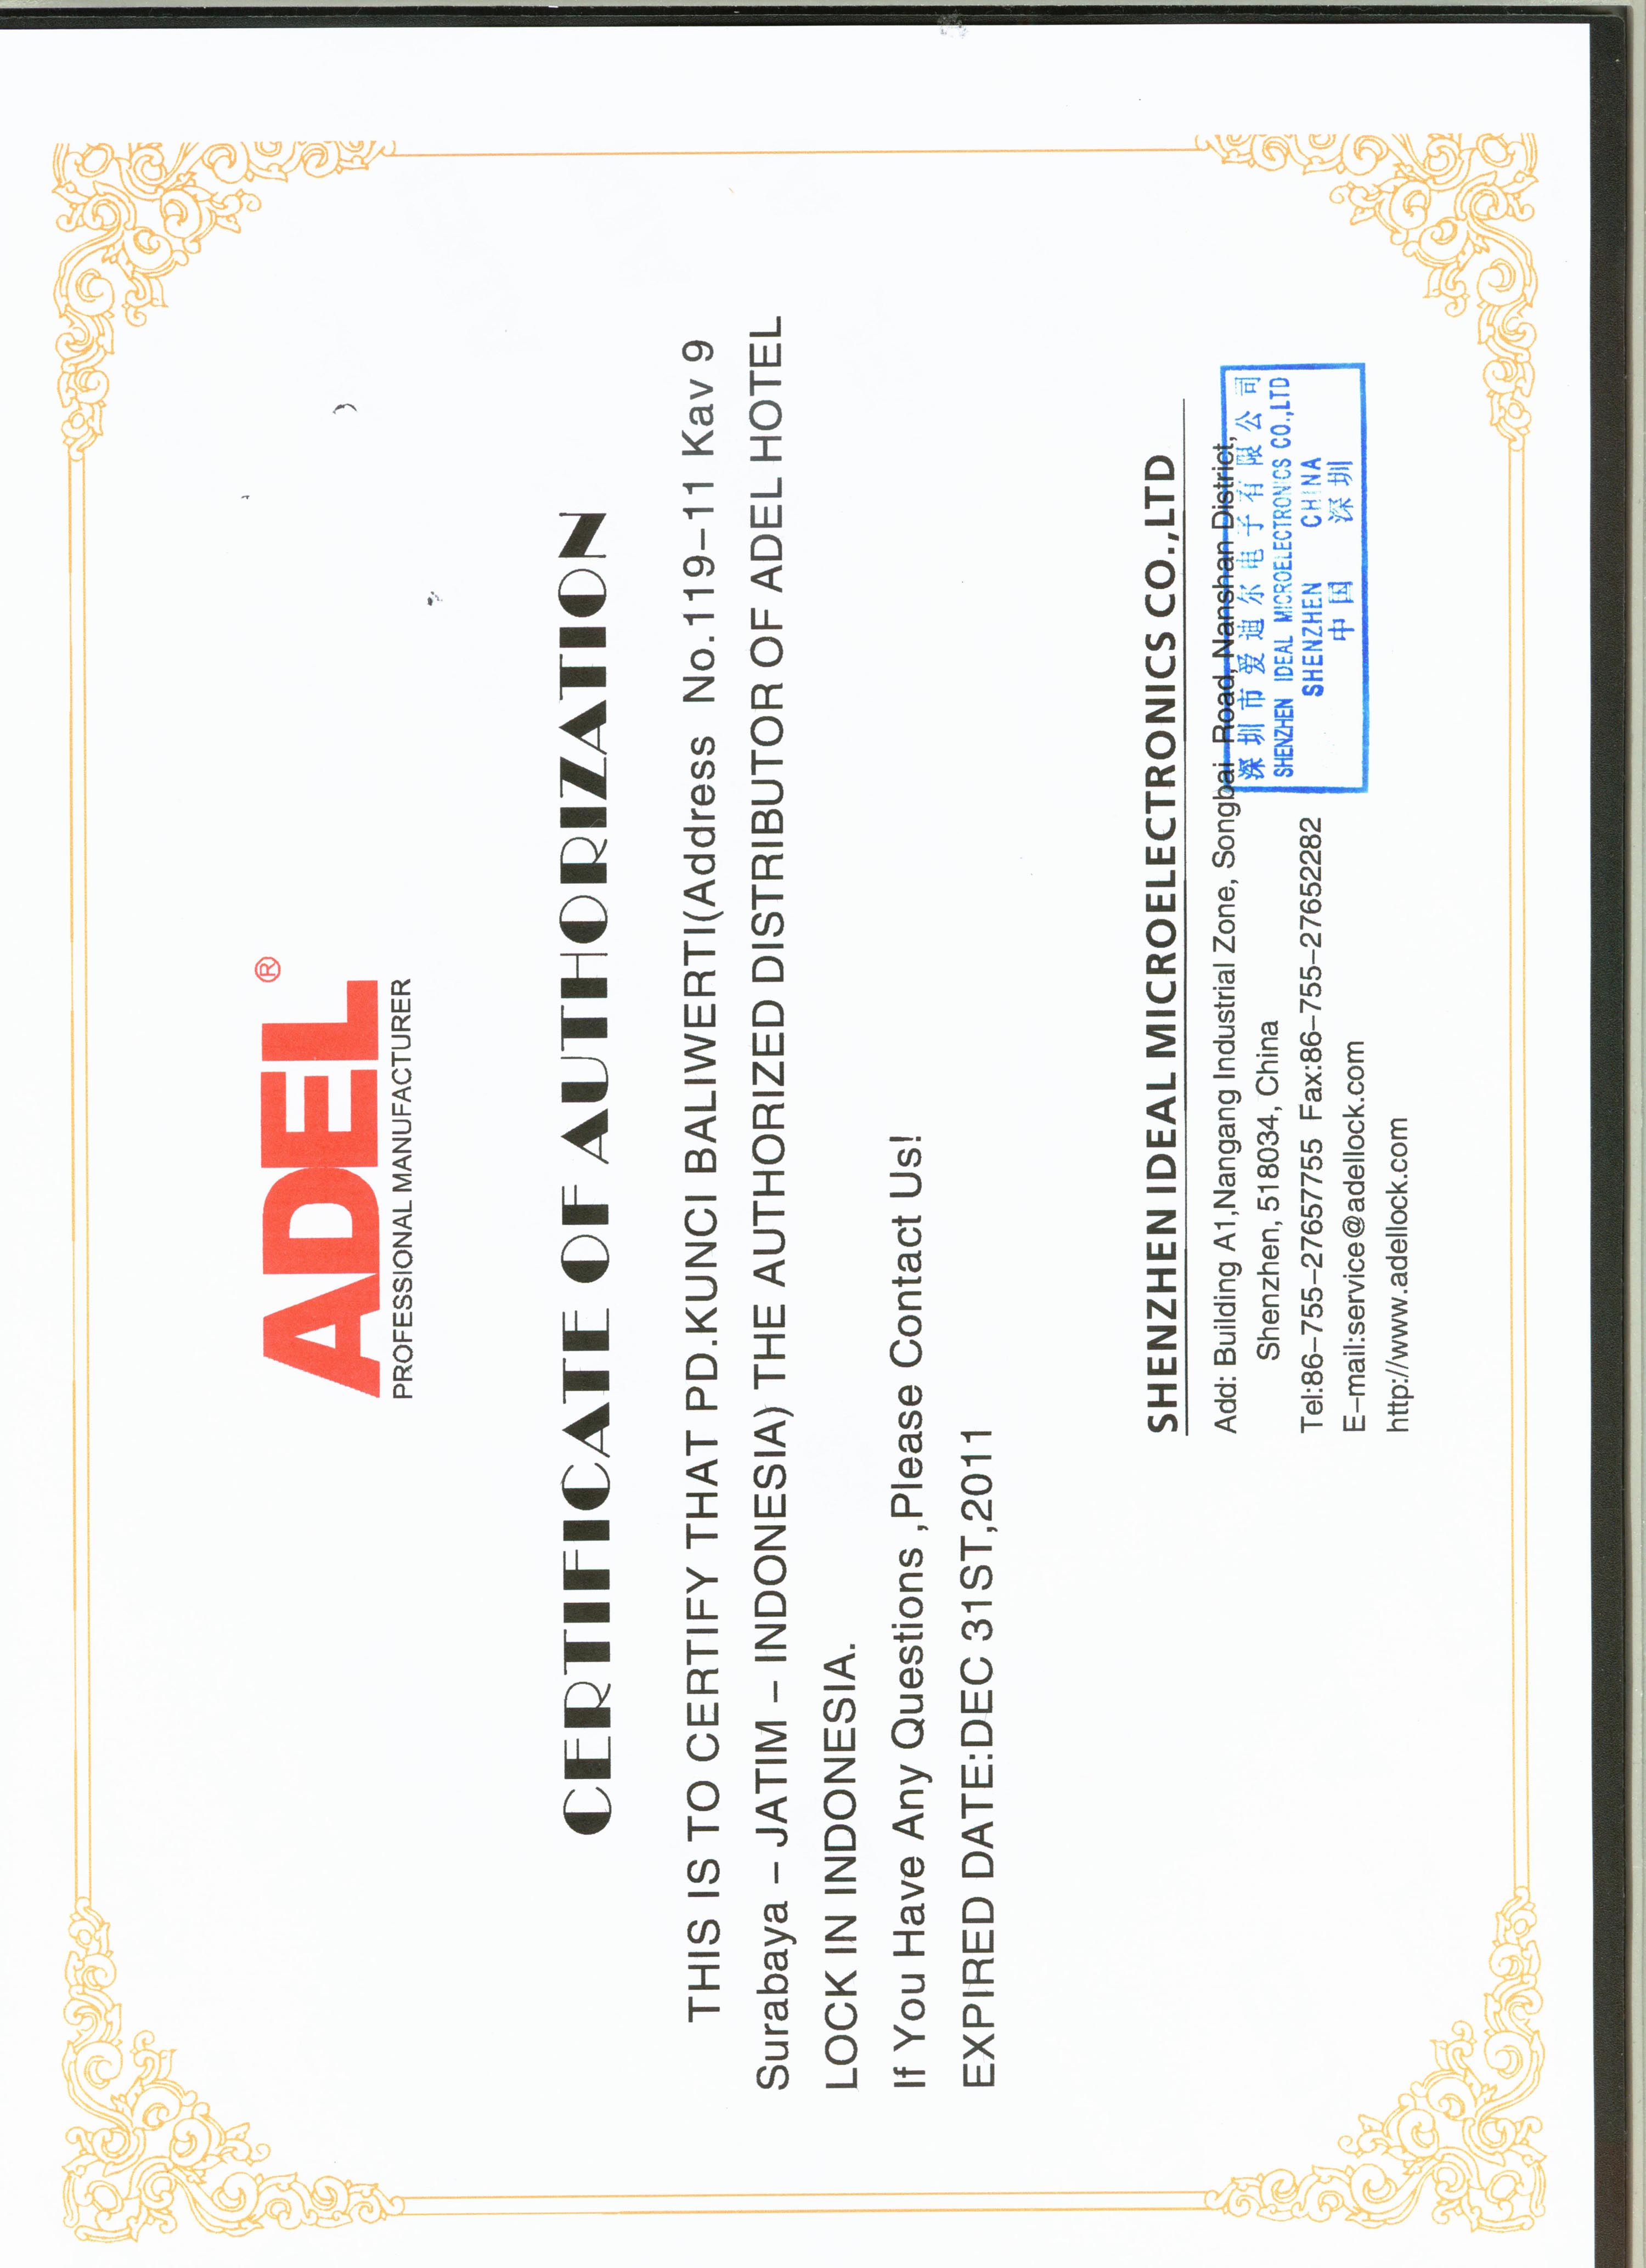 Authorized Distributor ADEL